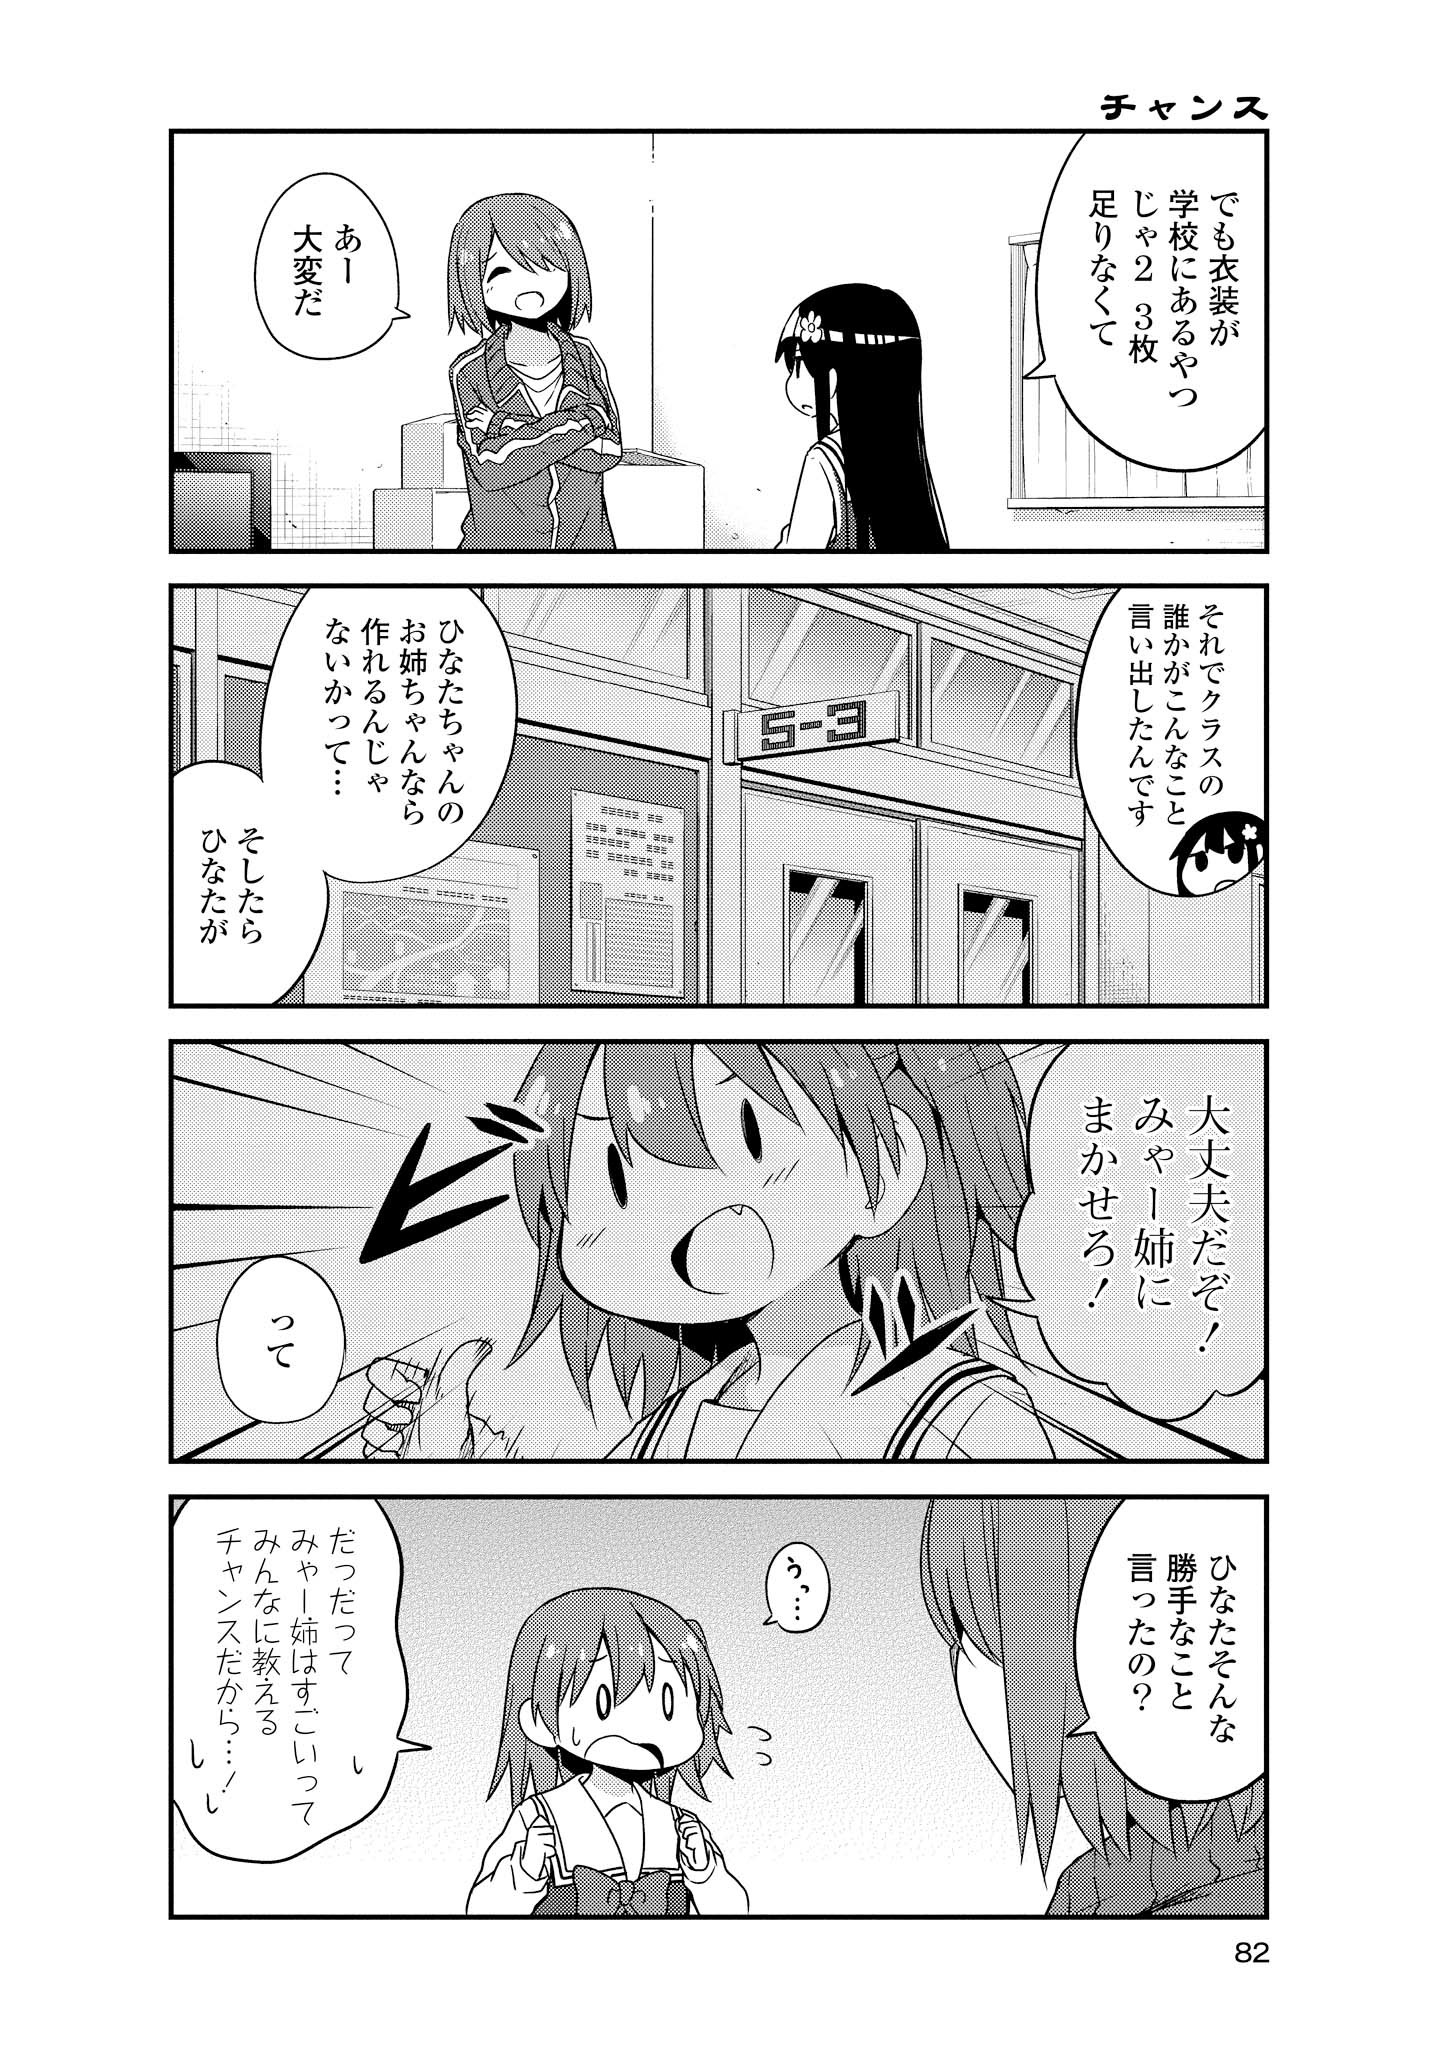 Watashi ni Tenshi ga Maiorita! - Chapter 34 - Page 4